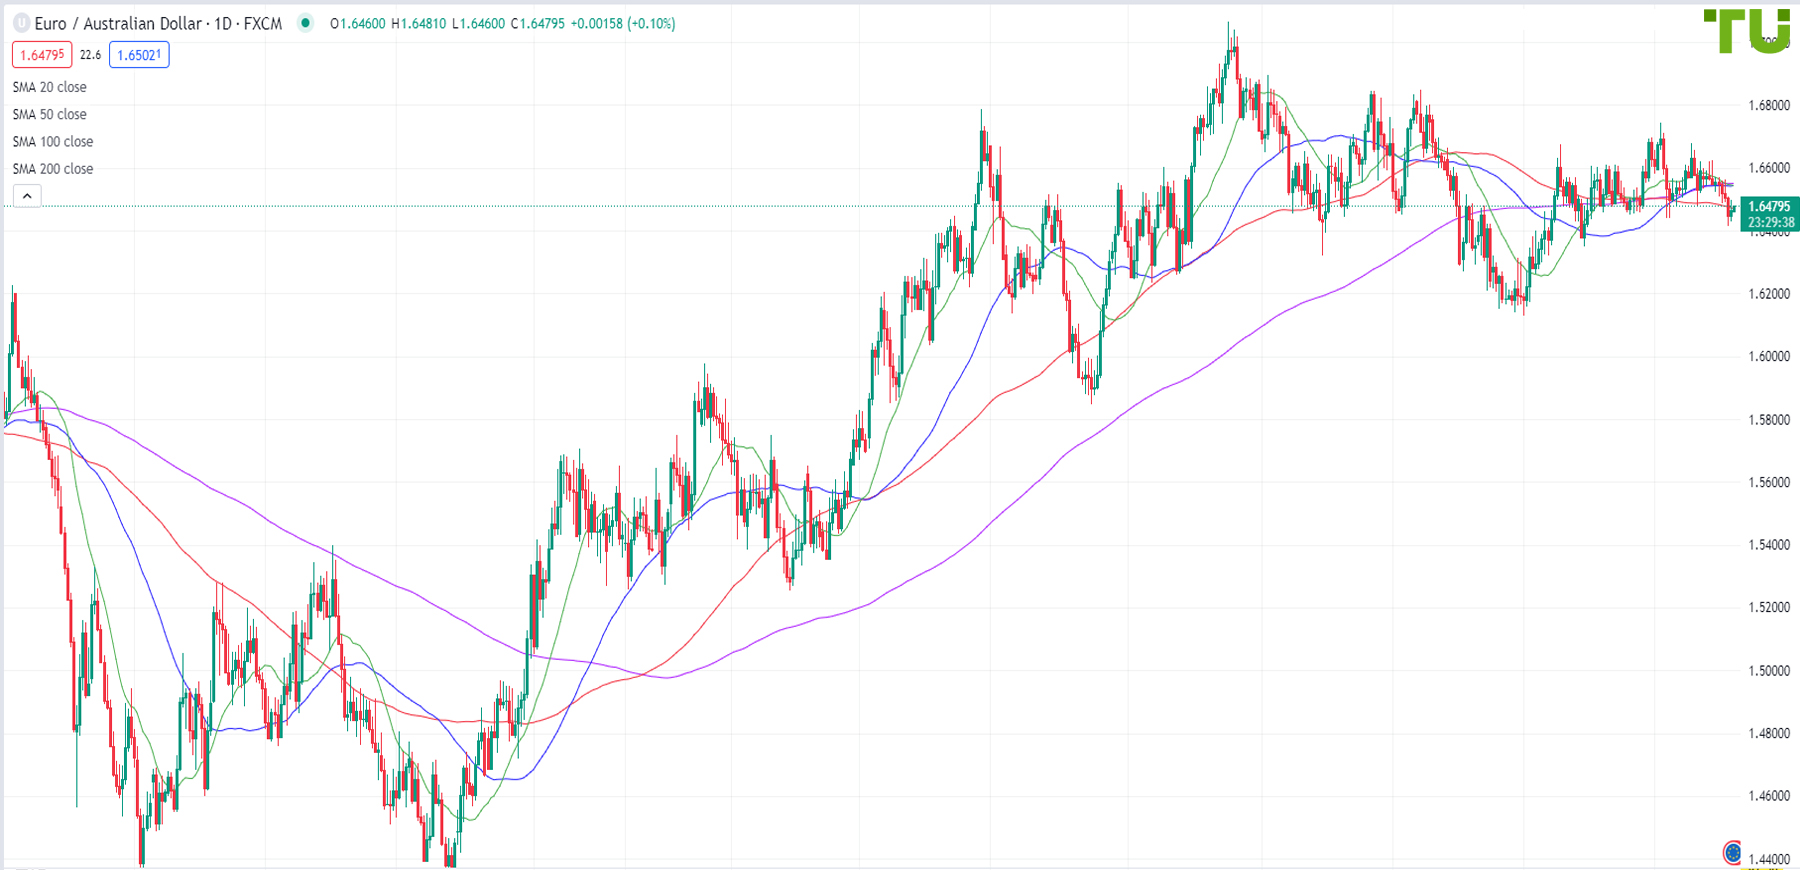 Euro/Aussie trades below 1.6490